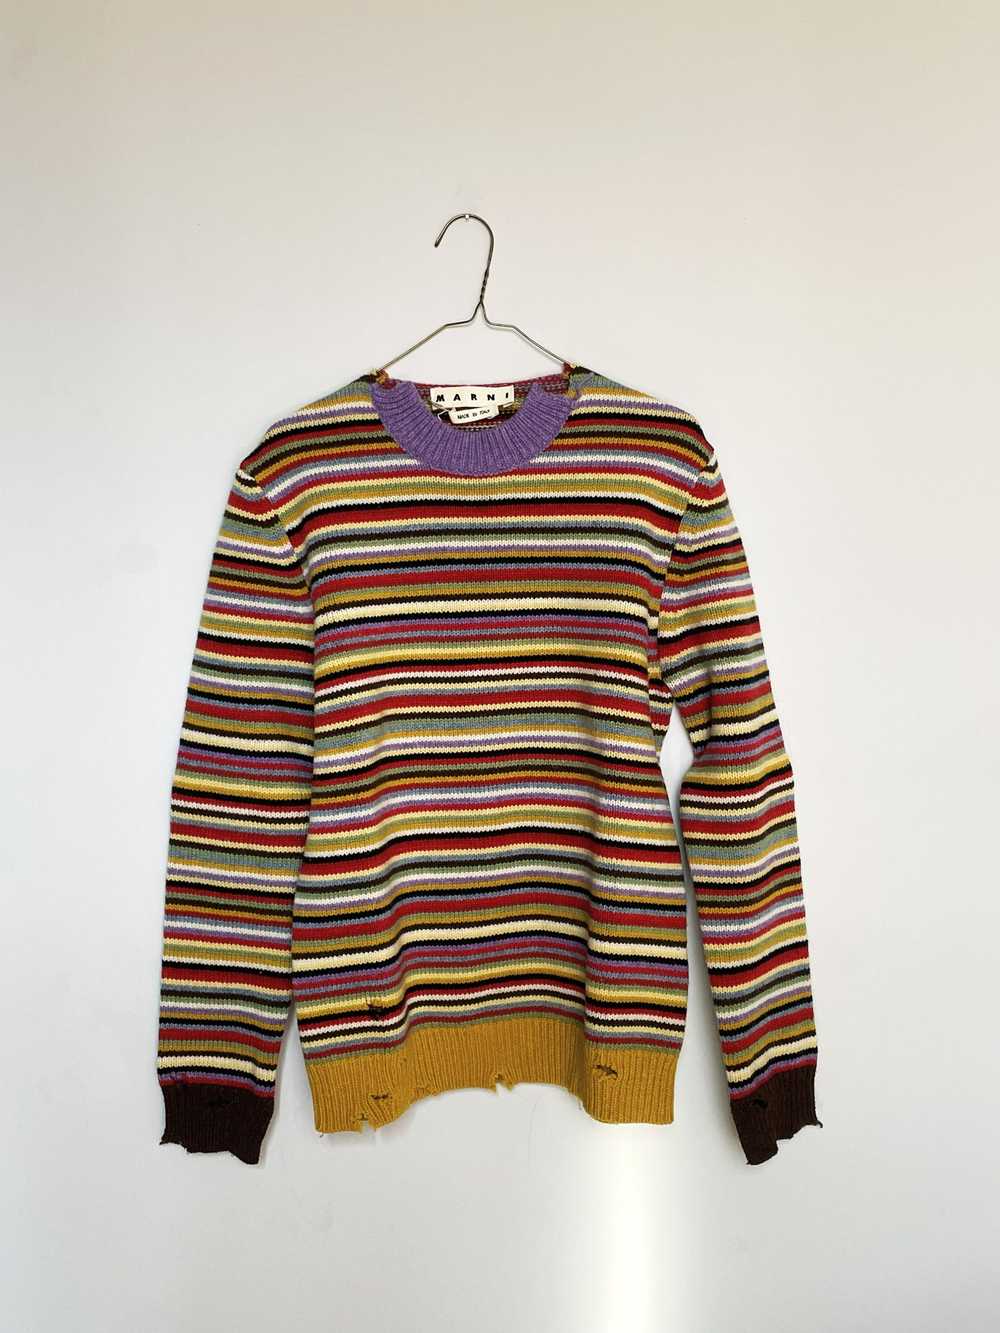 Marni Stripped wool sweater - image 1